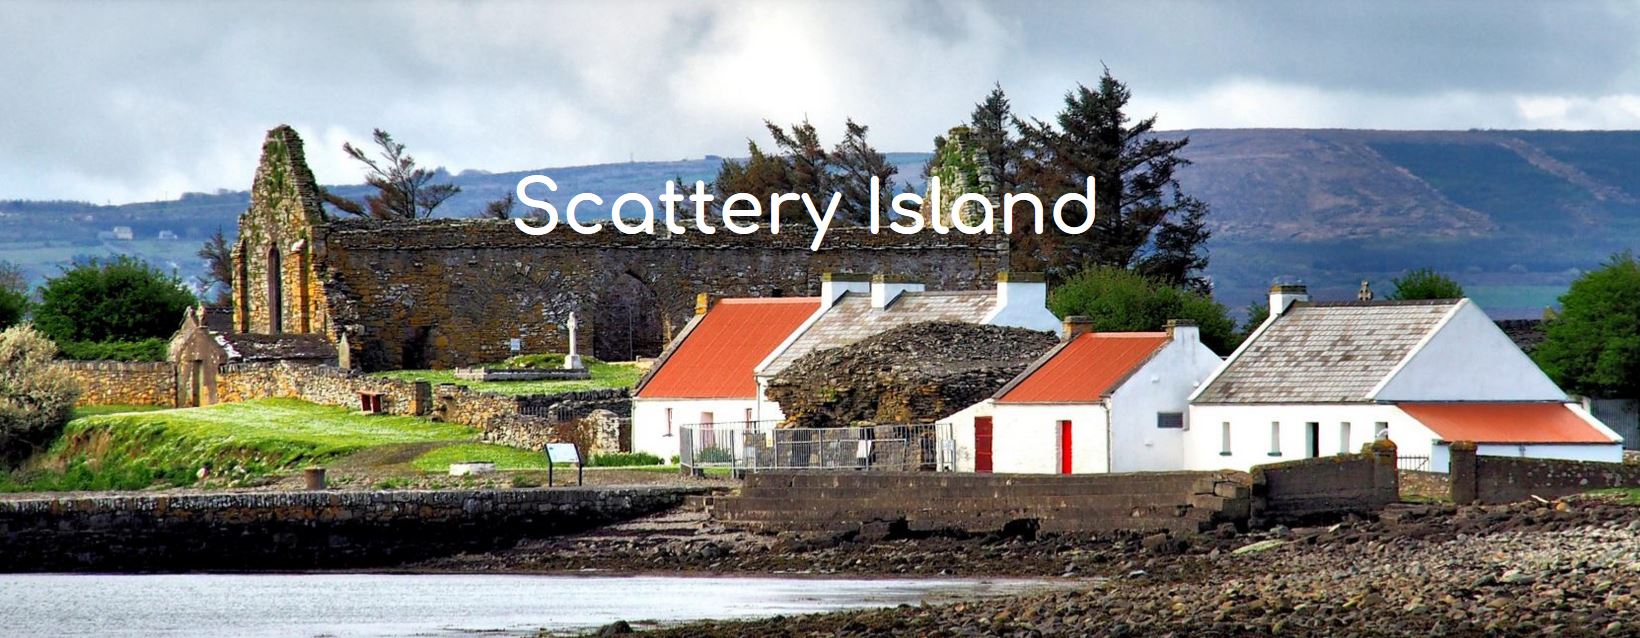 EDEN destination - Scattery Island